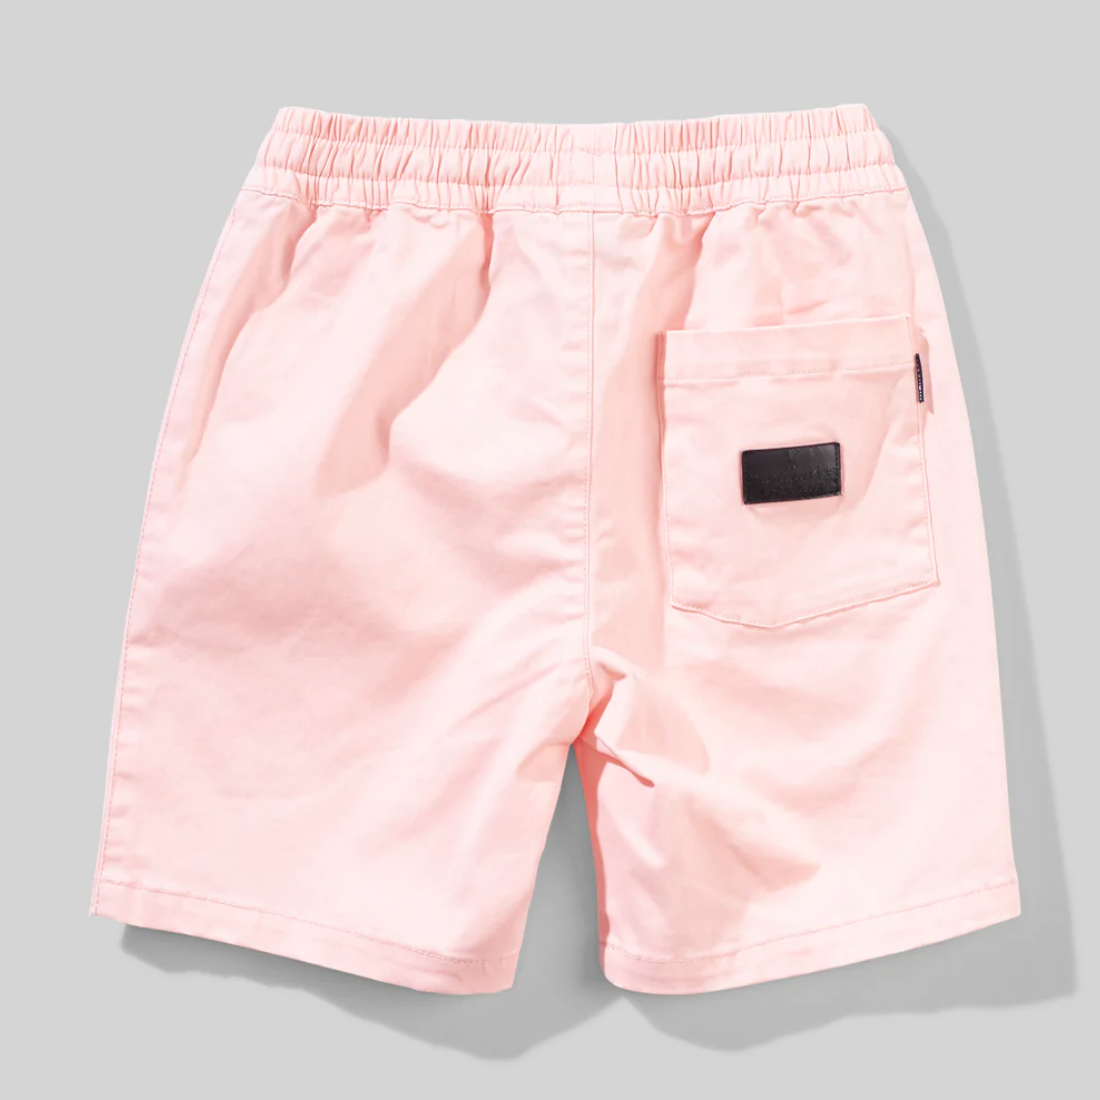 sikke short in light pink